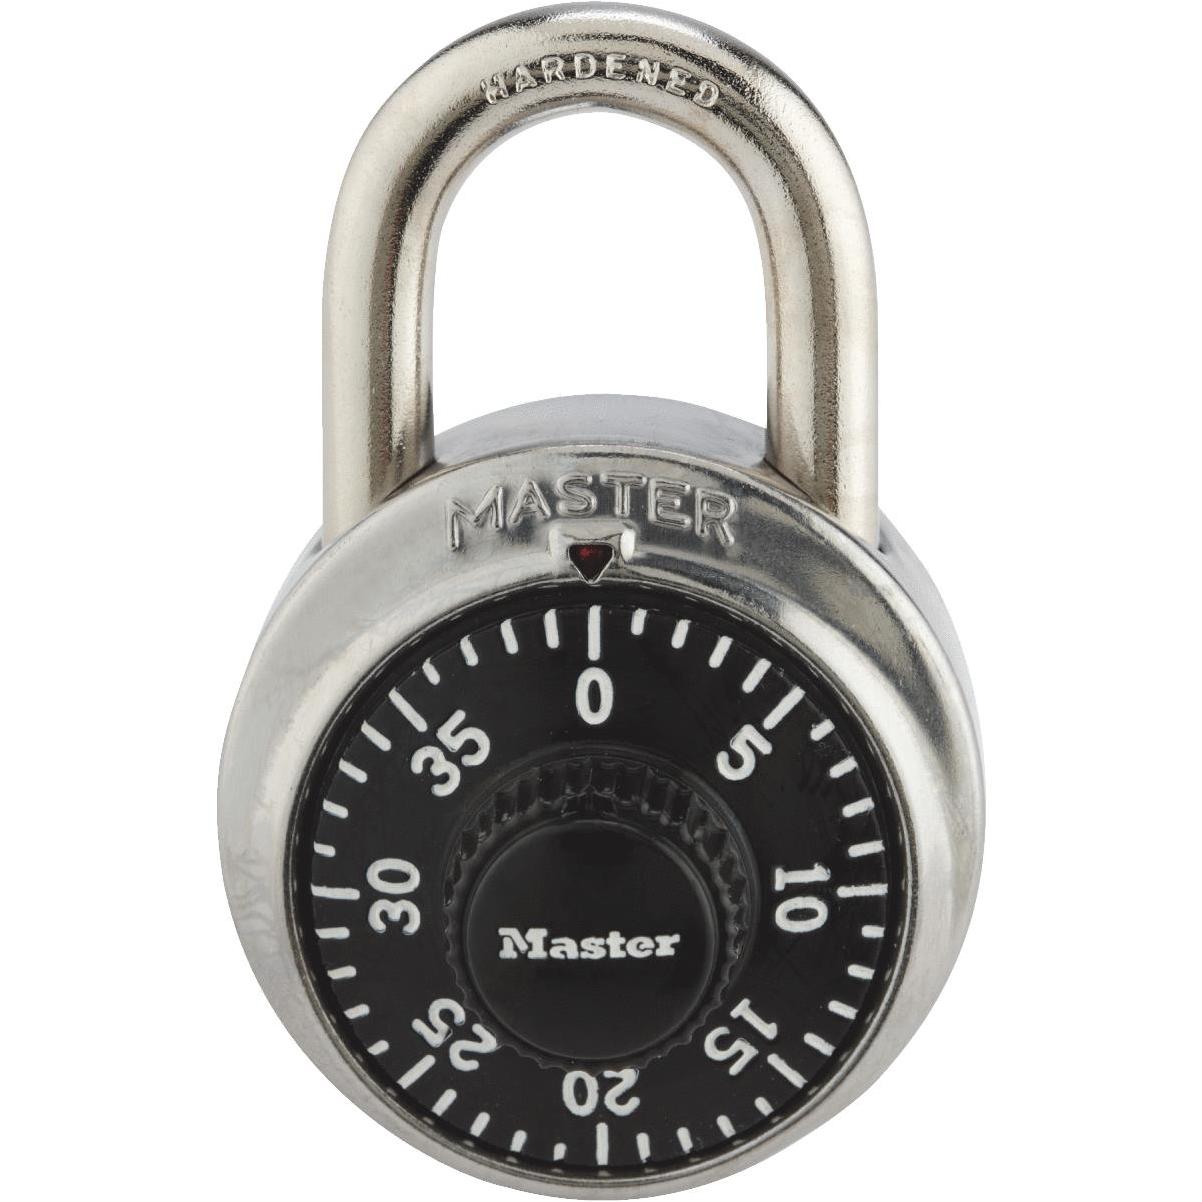 Defender Security 3/4 Stainless Steel Drawer & Cabinet Lock - Keyed Alike